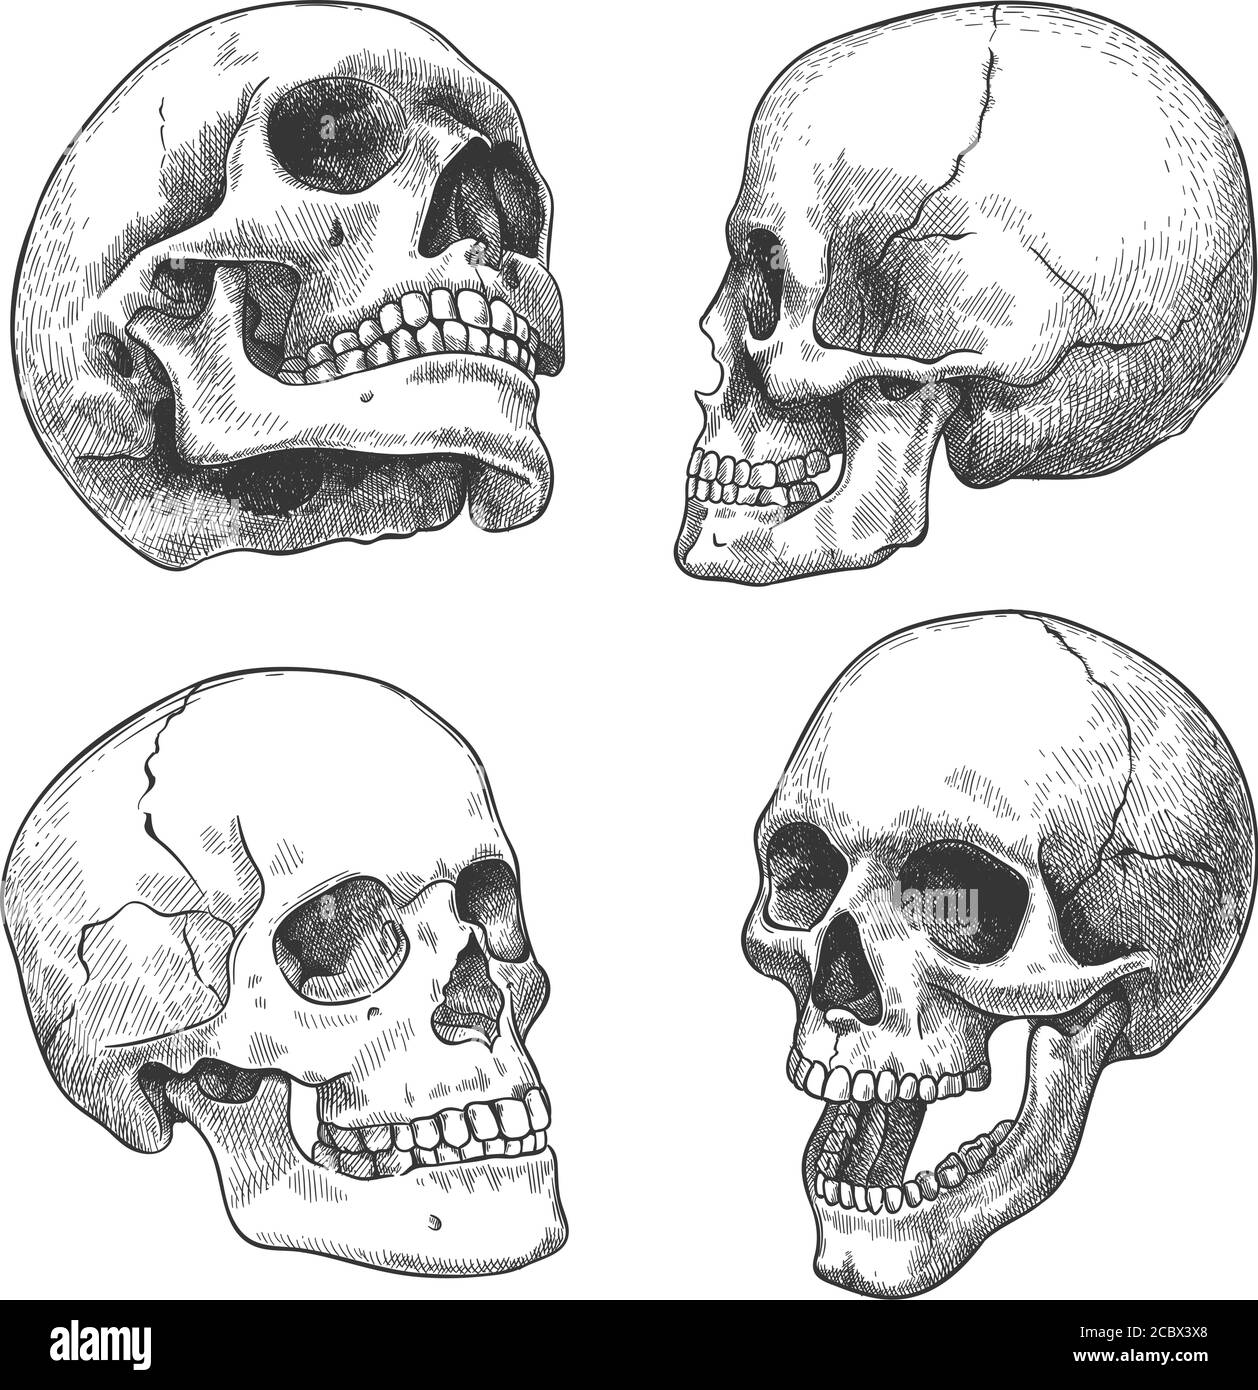 Handgezeichneter Schädel. Skizze anatomische Schädel in verschiedenen Winkeln, Gothic Tattoo. Menschliches Skelett toter Kopf halloween Gravur Vektor-Set Stock Vektor